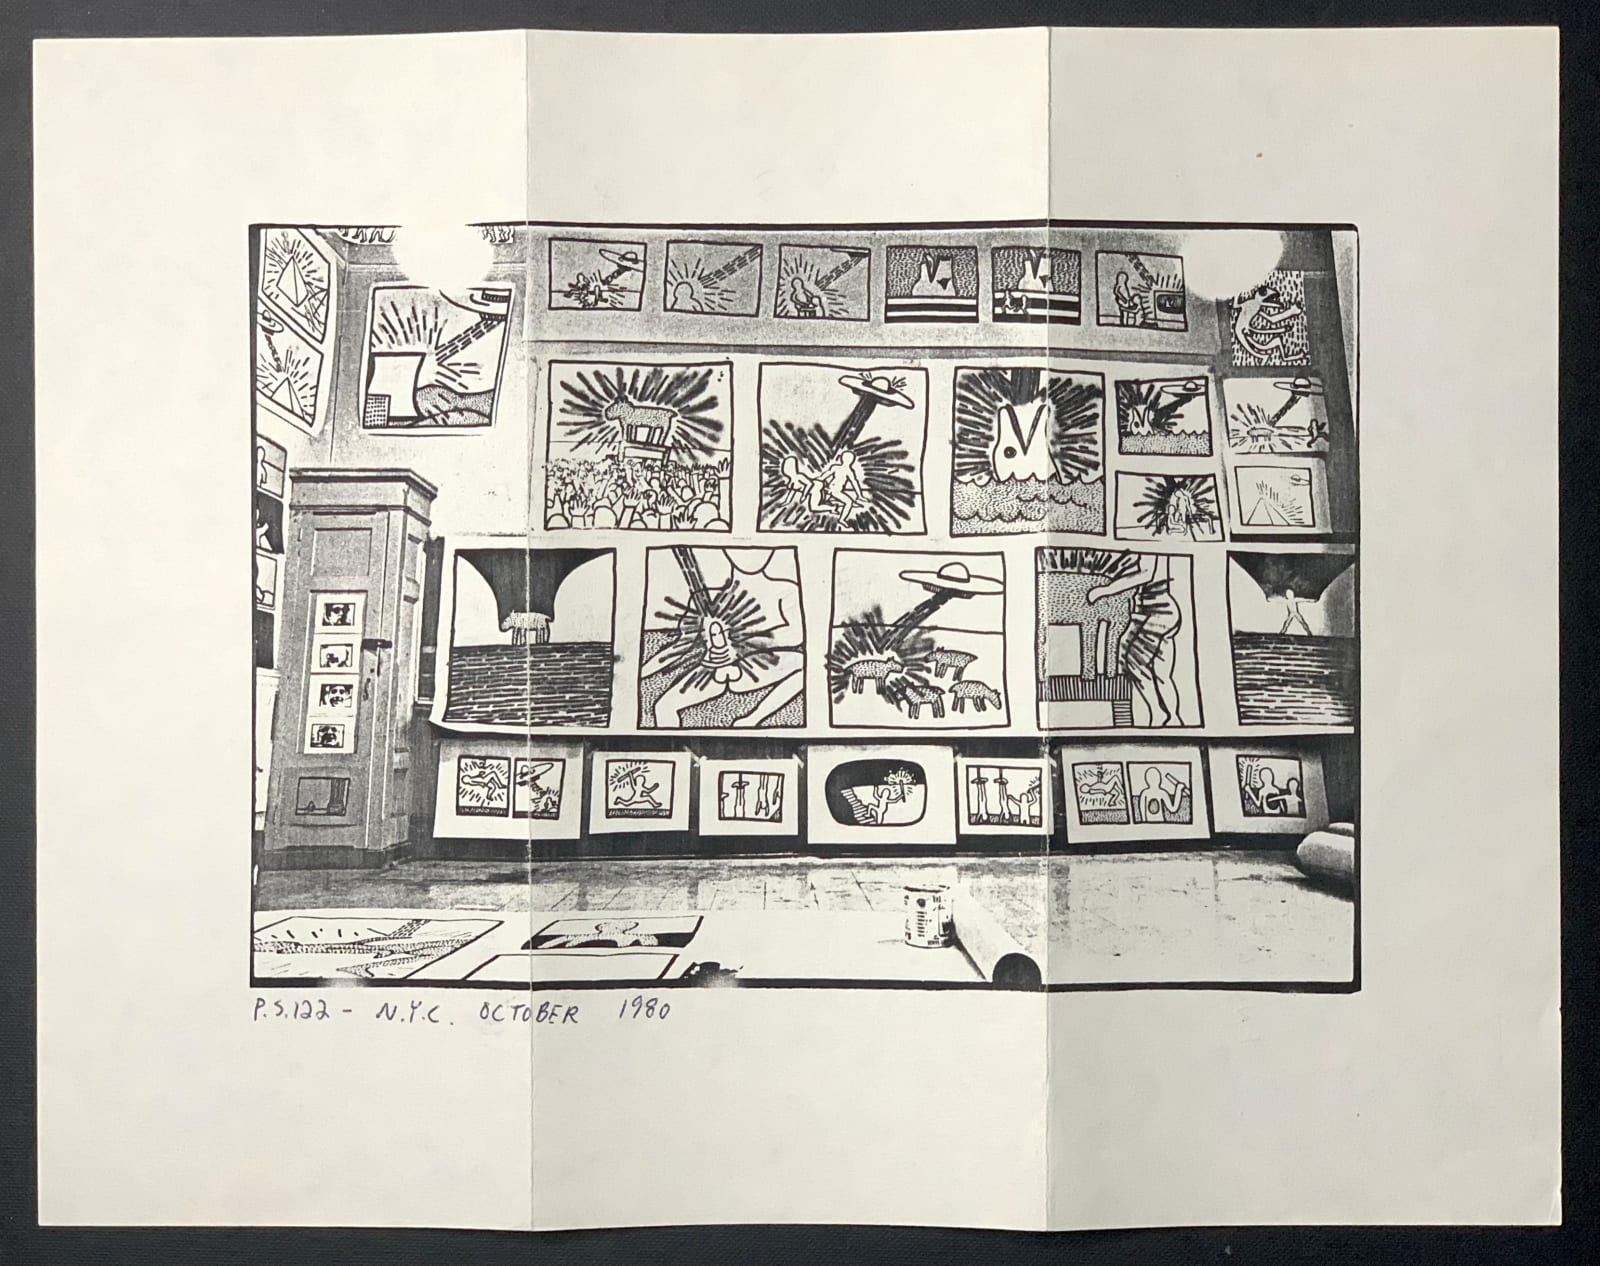 Keith Haring, P.S. 122 Open Studio Xerox (October 1980), 1980 